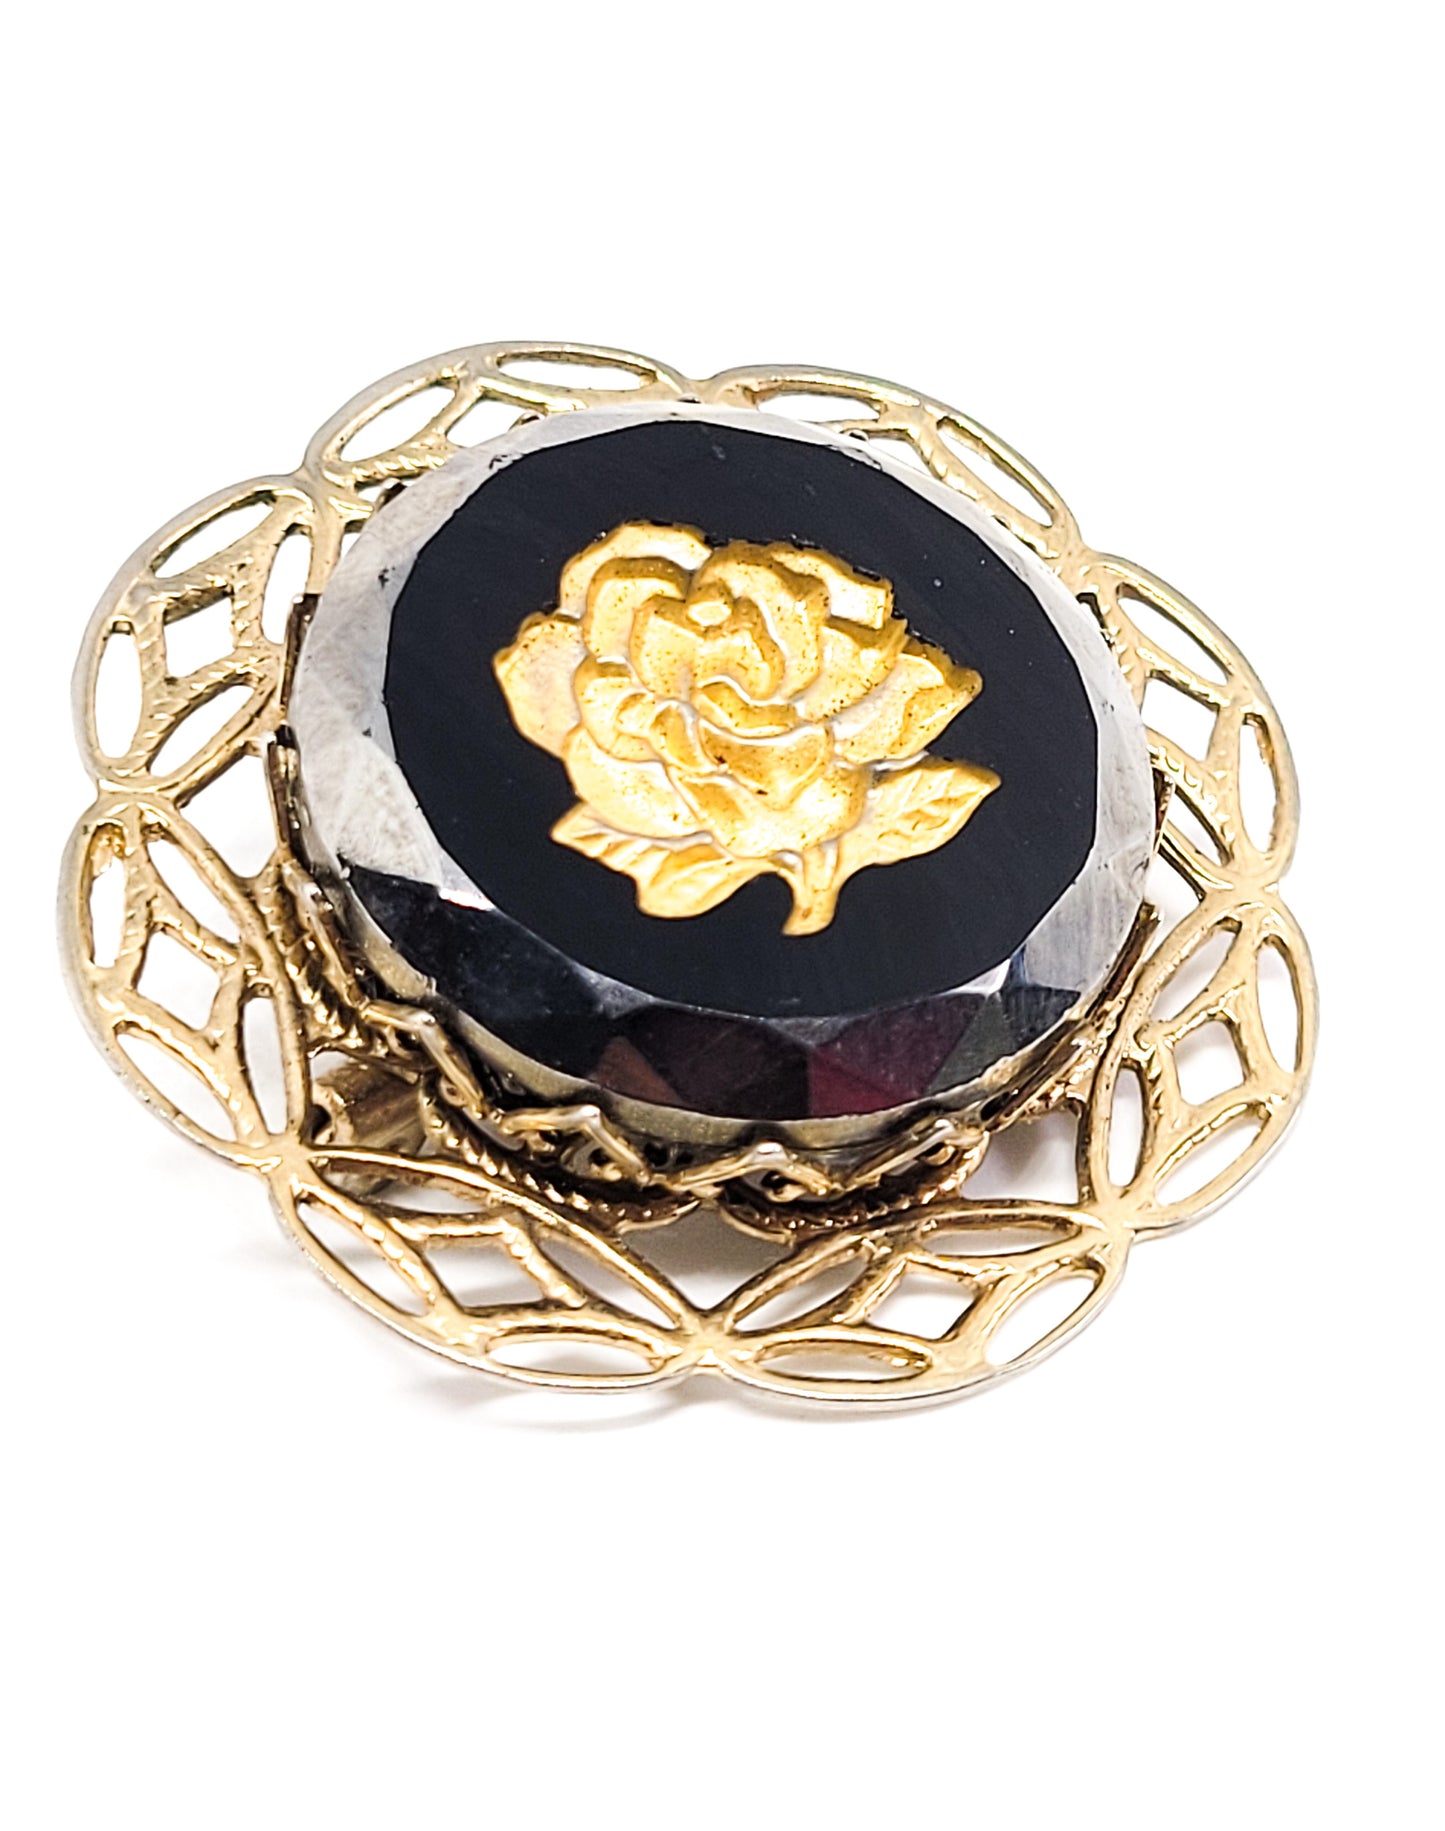 Reverse Carved gold Rose hematite glass vintage brooch